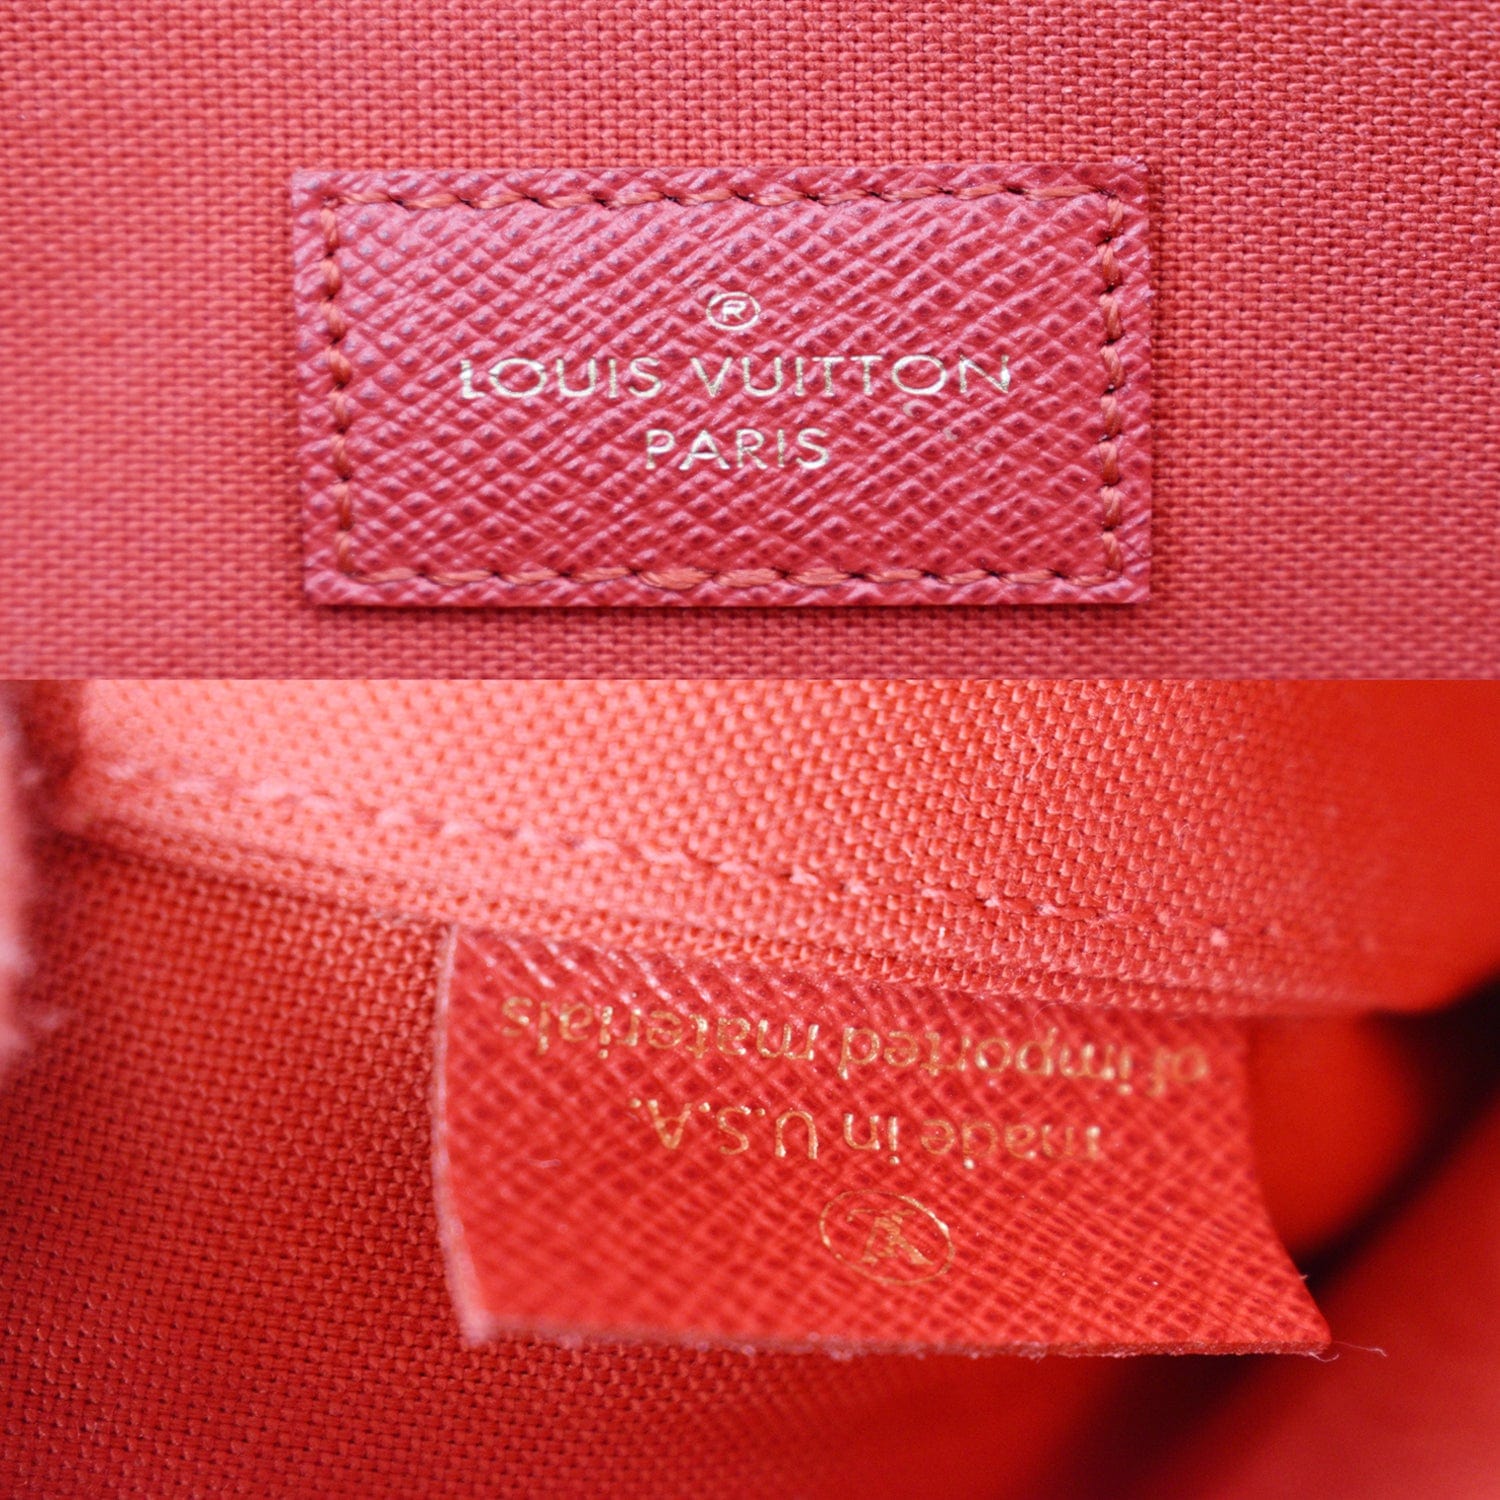 Louis Vuitton Pochette Felicie With Inserts Brown Damier Ébène Canvas Cross  Body Bag